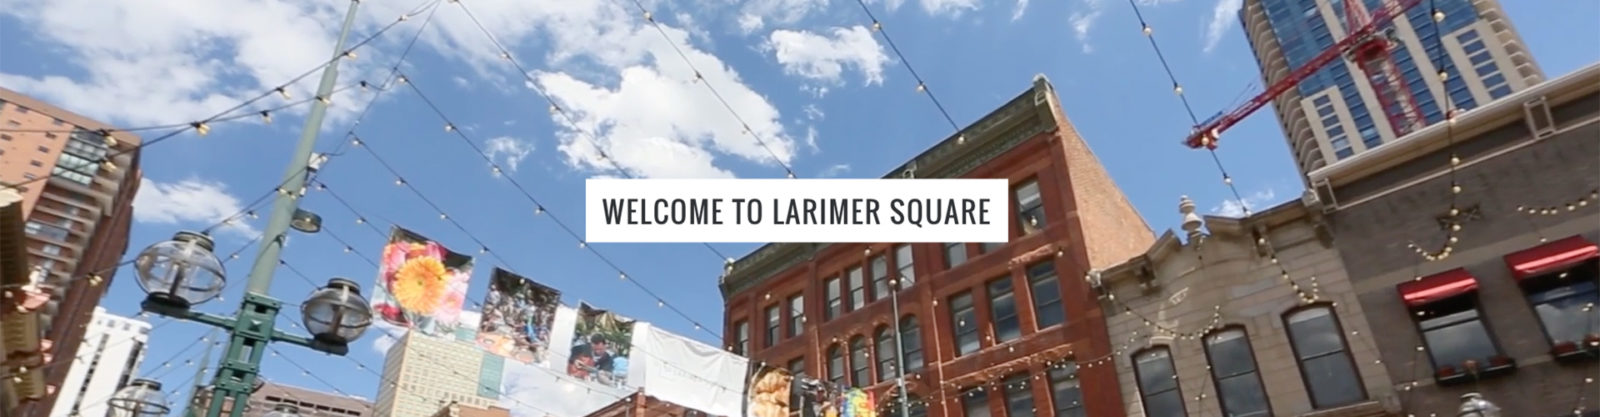 Larimer-Square-Featured-Image